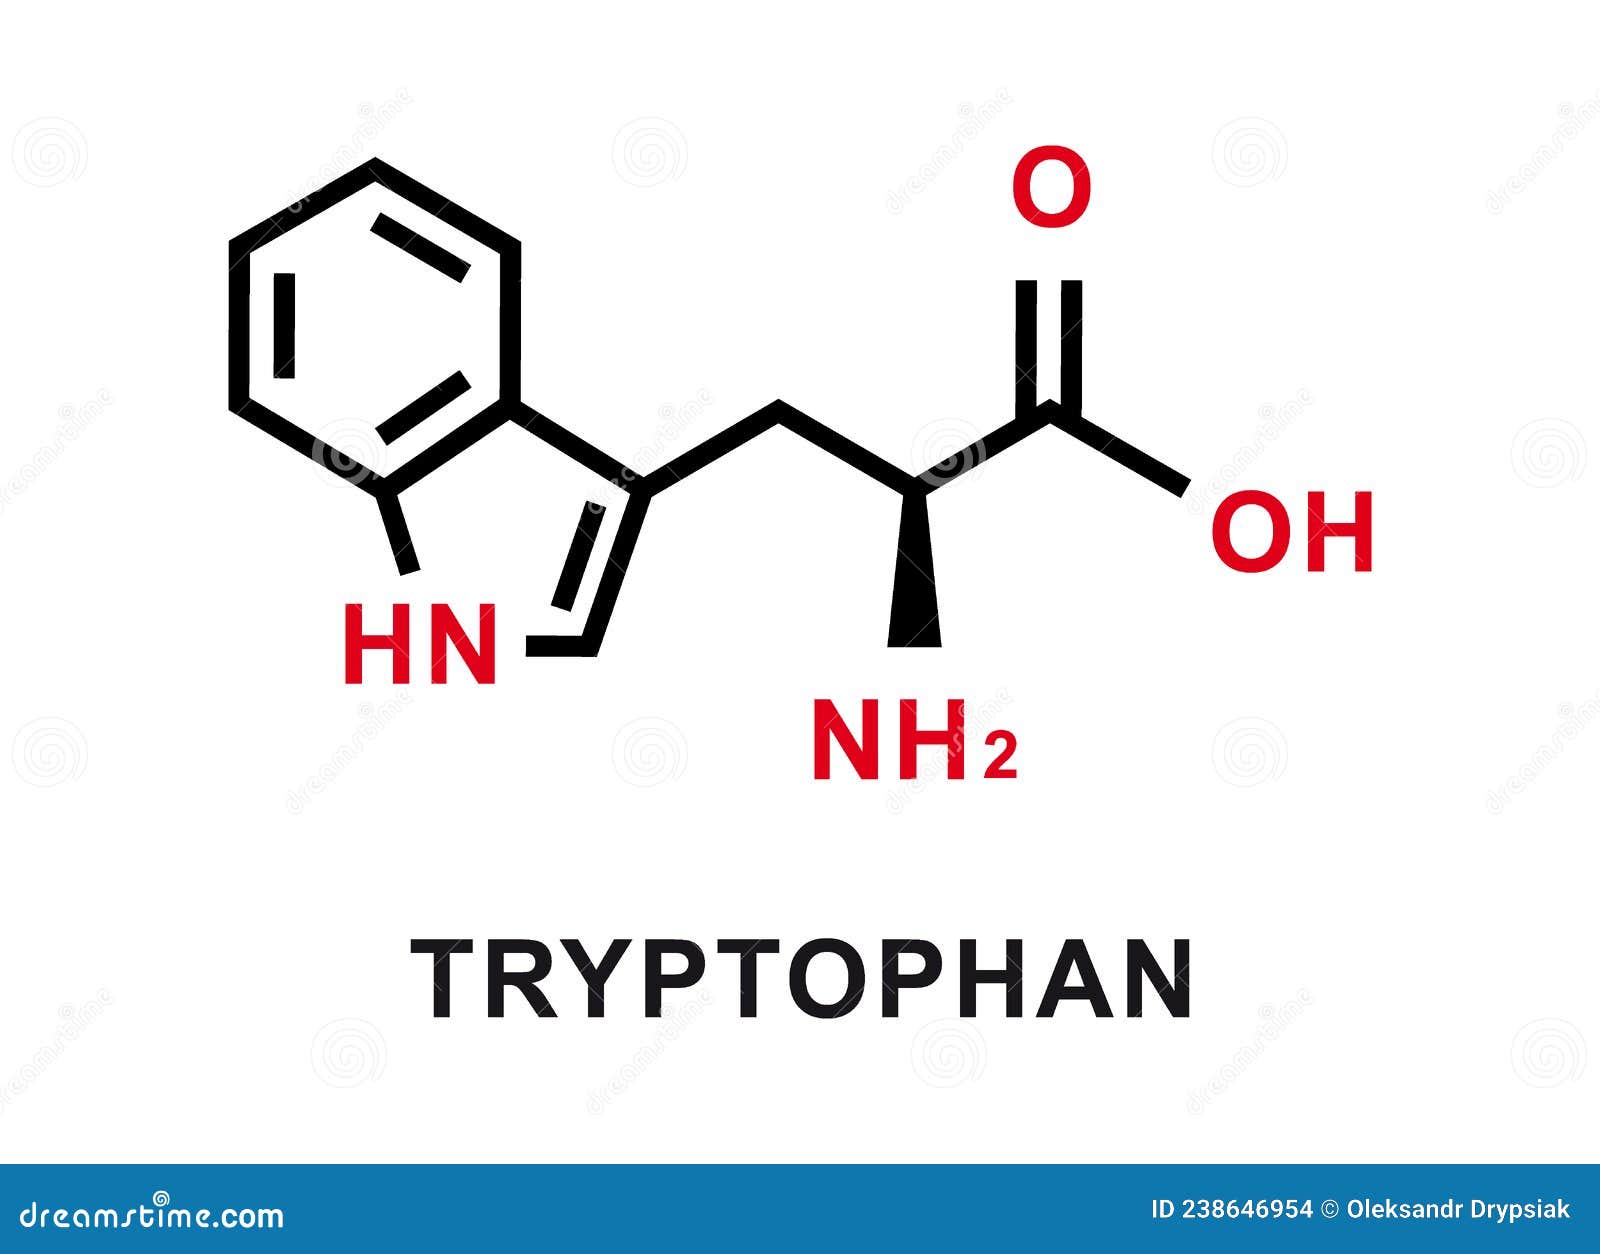 tryptophan